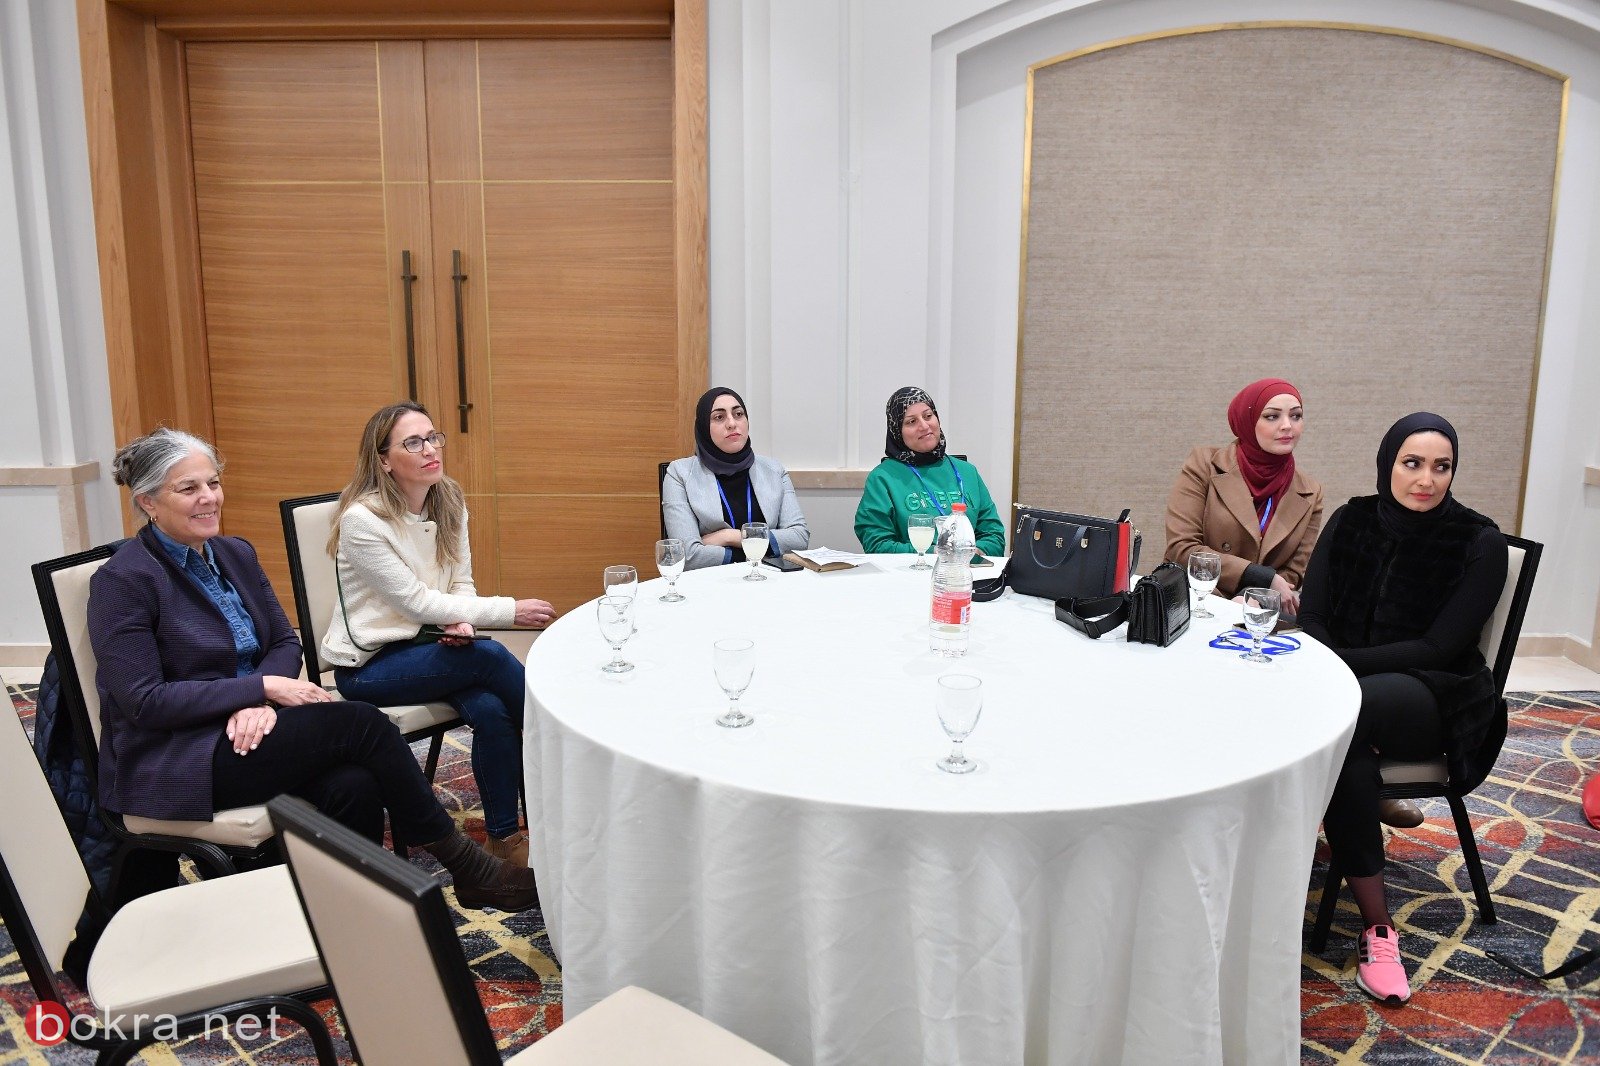 طرح حلول ومشاريع متعددة في مؤتمر "المجتمع العربي، التحديات والفرص" بتنظيم من صندوق "ادموند دي روتشيلد"-45